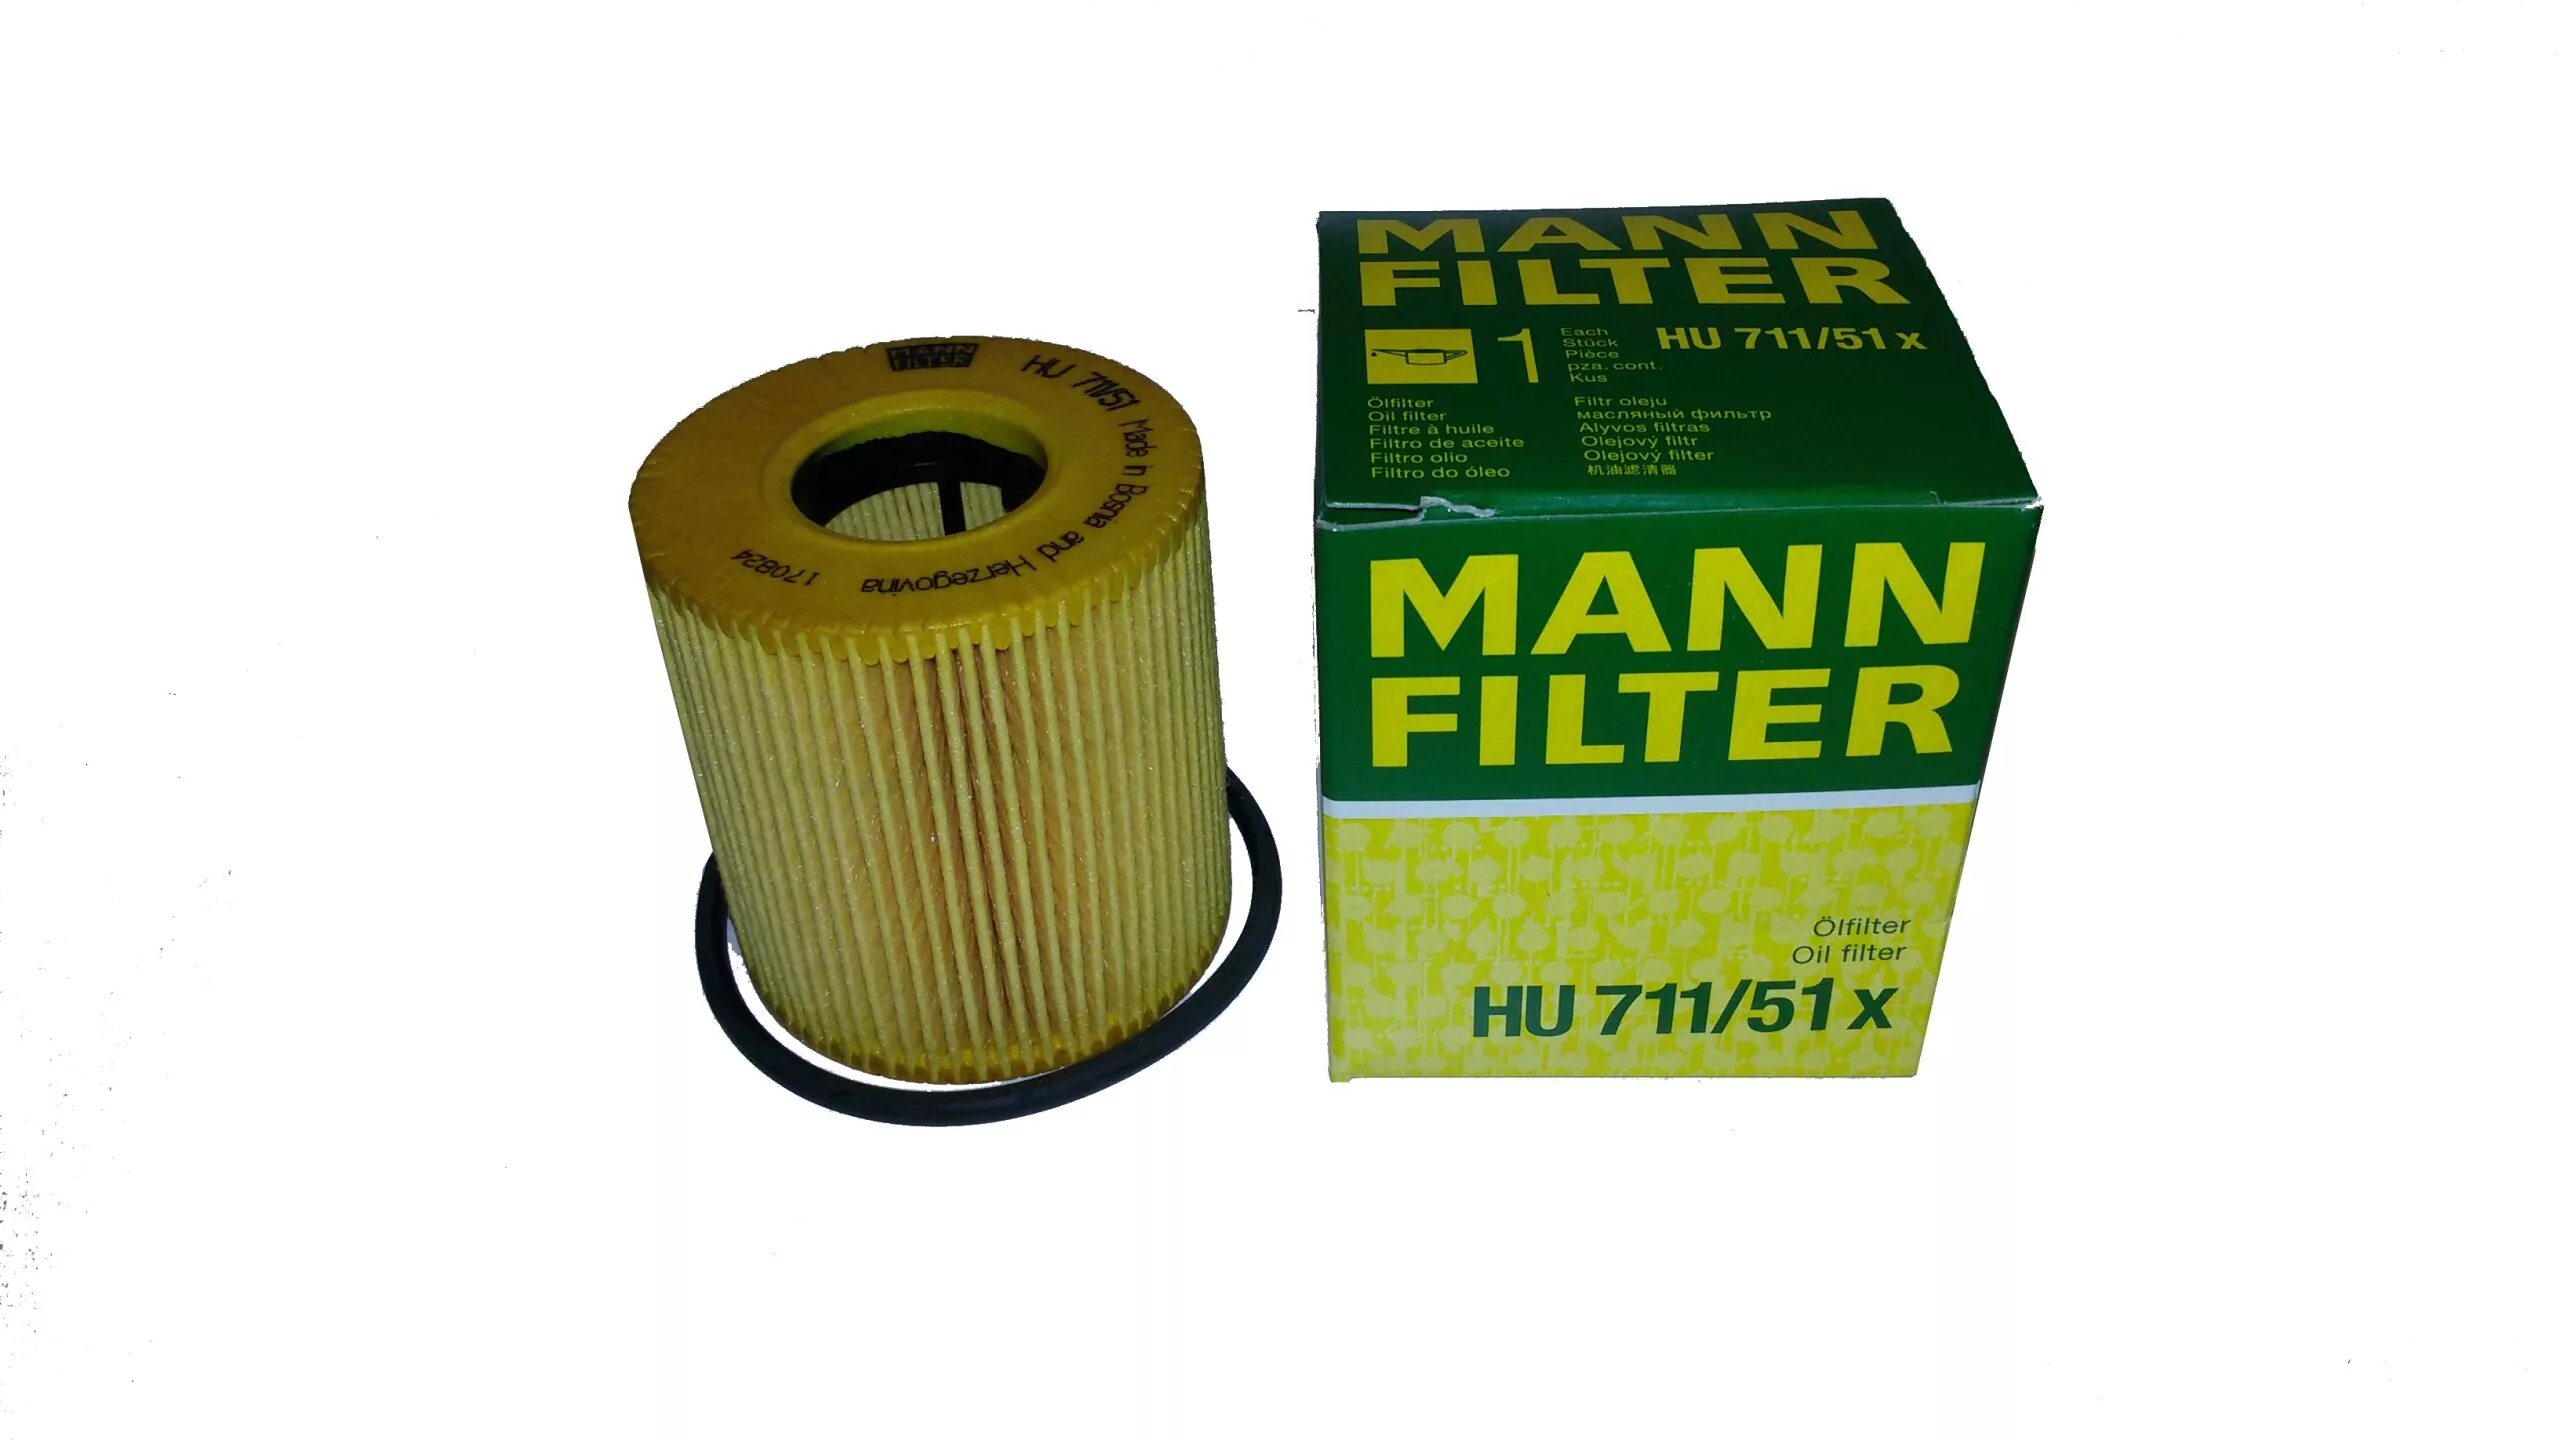 Фильтр масляный пежо 206. Масляный фильтр Mann-Filter hu711/51x. Масляный фильтр Манн на Пежо 207. Масляный фильтр Peugeot 206 307. Фильтр масляный Пежо 206 1.6 артикул.